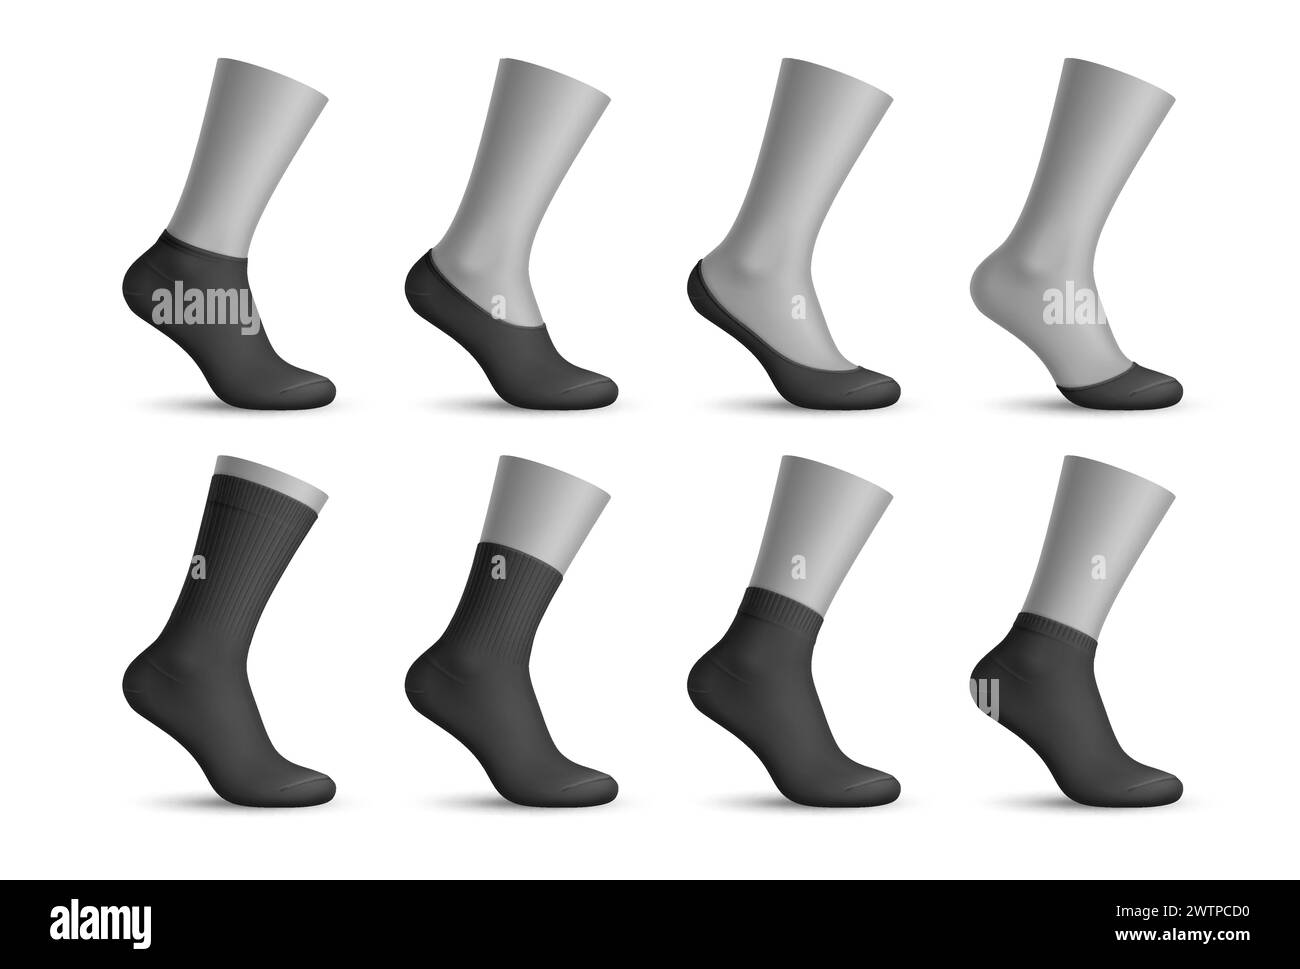 Realistische Herrensocken, 3D-Vektor-schwarze sox-Mockups für Mode- und Sportswear-Designs. Elastische Sockenschablonen aus isoliertem Material mit einem Zehenschutz aus Baumwolle Stock Vektor